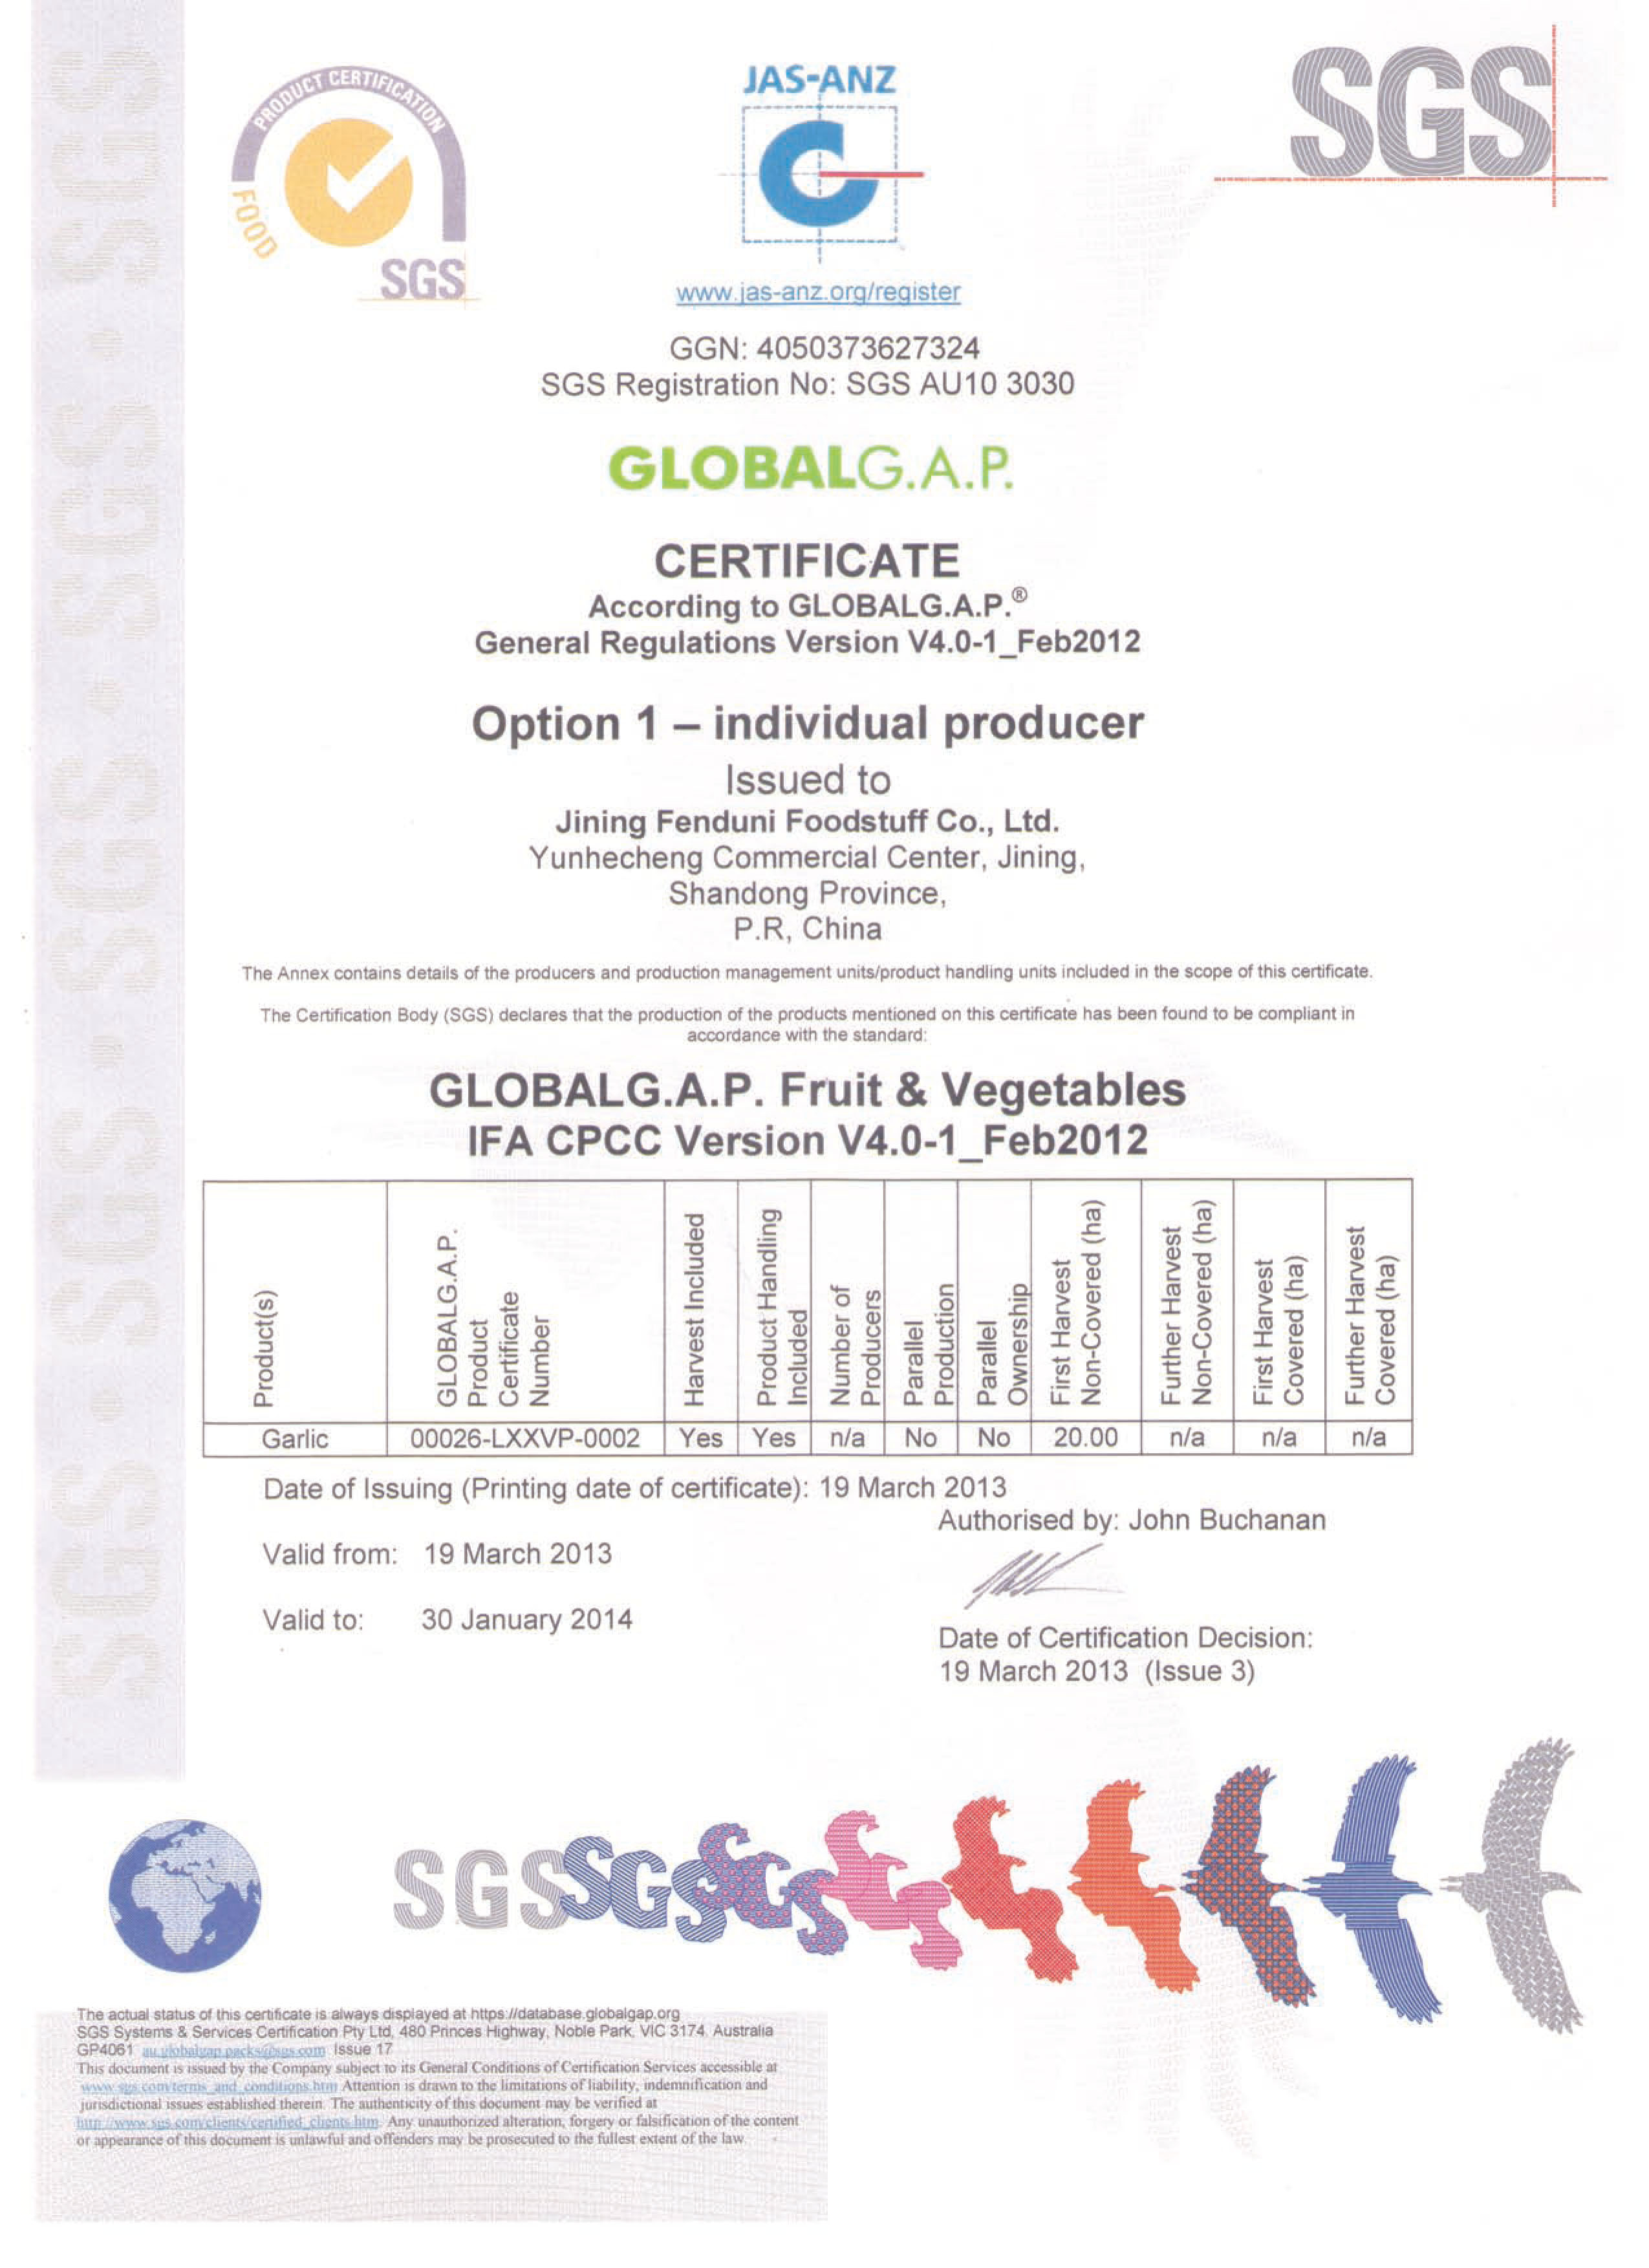 Global Gap Certificate